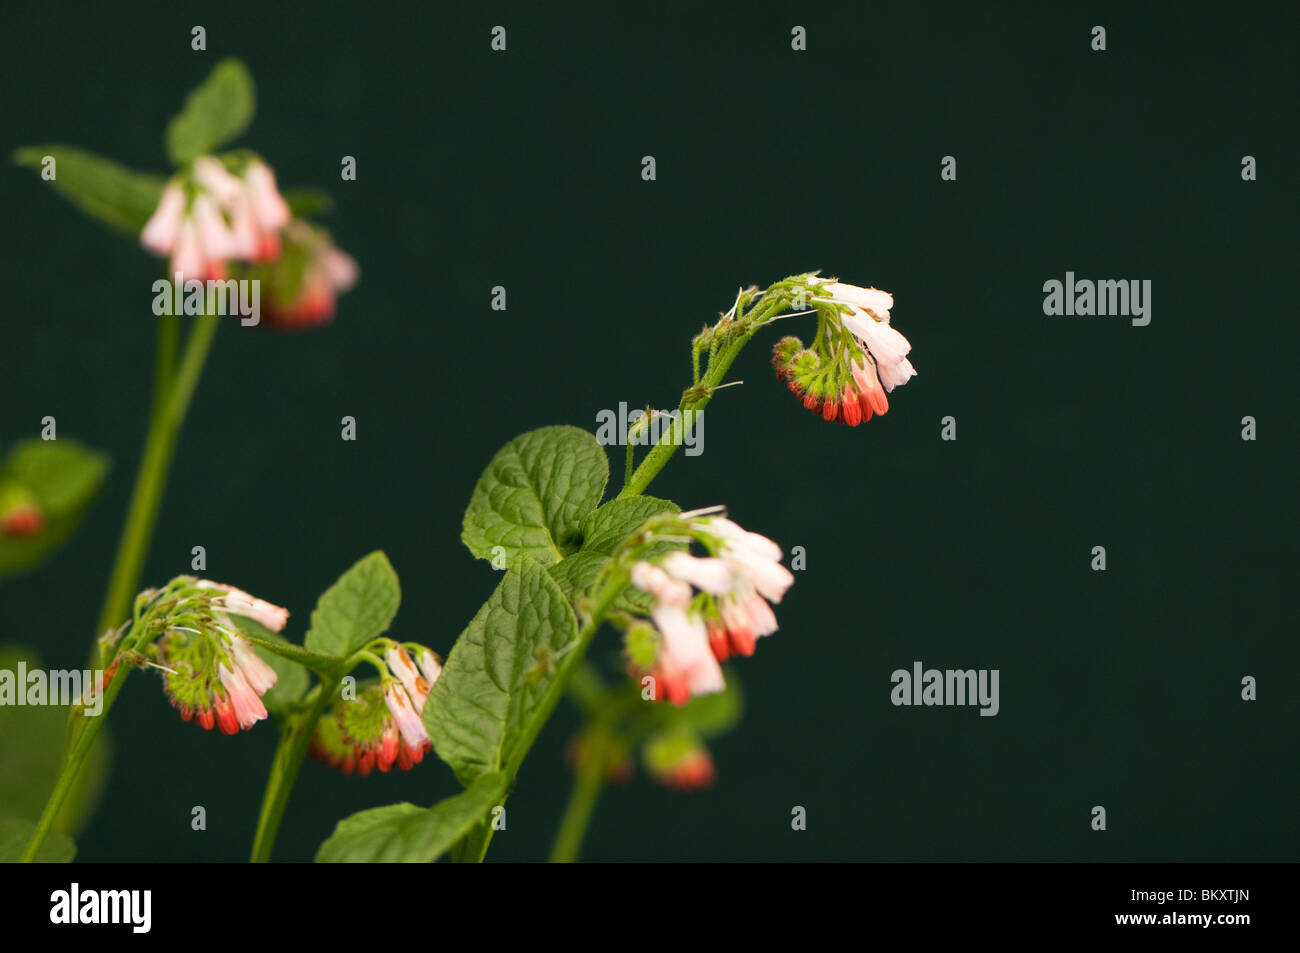 Dwarf comfrey, Symphytum grandiflorum, in flower Stock Photo